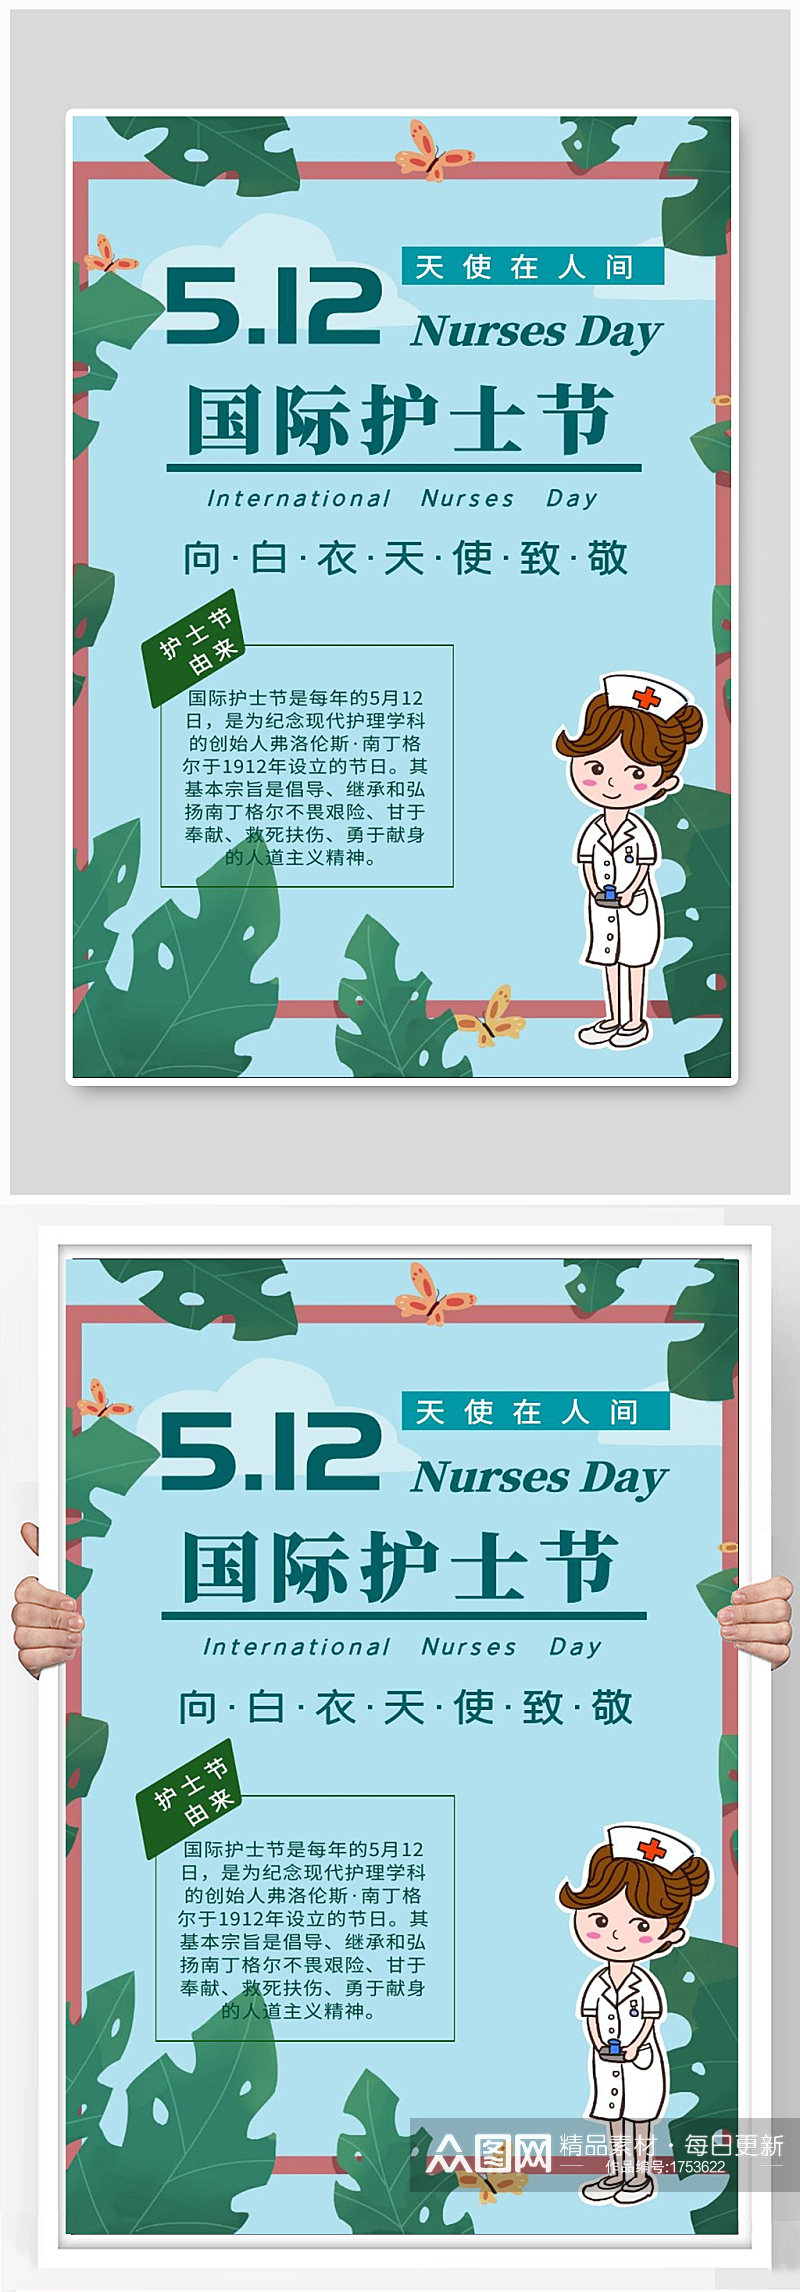 512国际护士节宣传海报设计素材